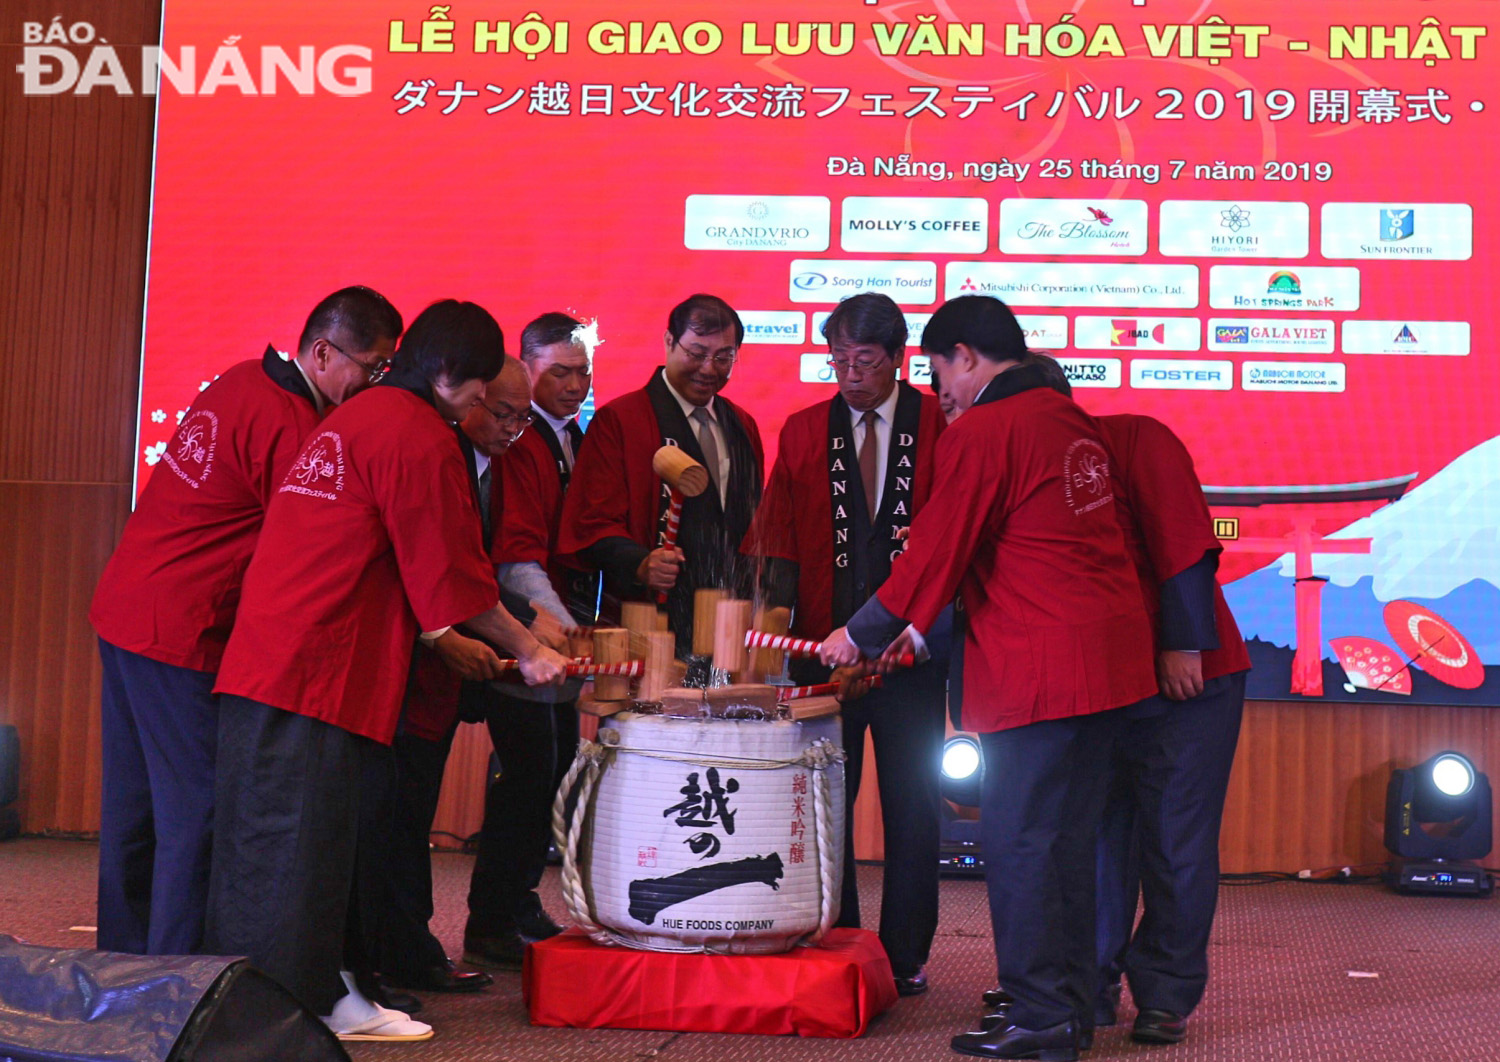 Chủ tịch UBND thành phố Huỳnh Đức Thơ thực hiện nghi thức đập rượu sake truyền thống cùng các đại biểu khai mạc Lễ hội.